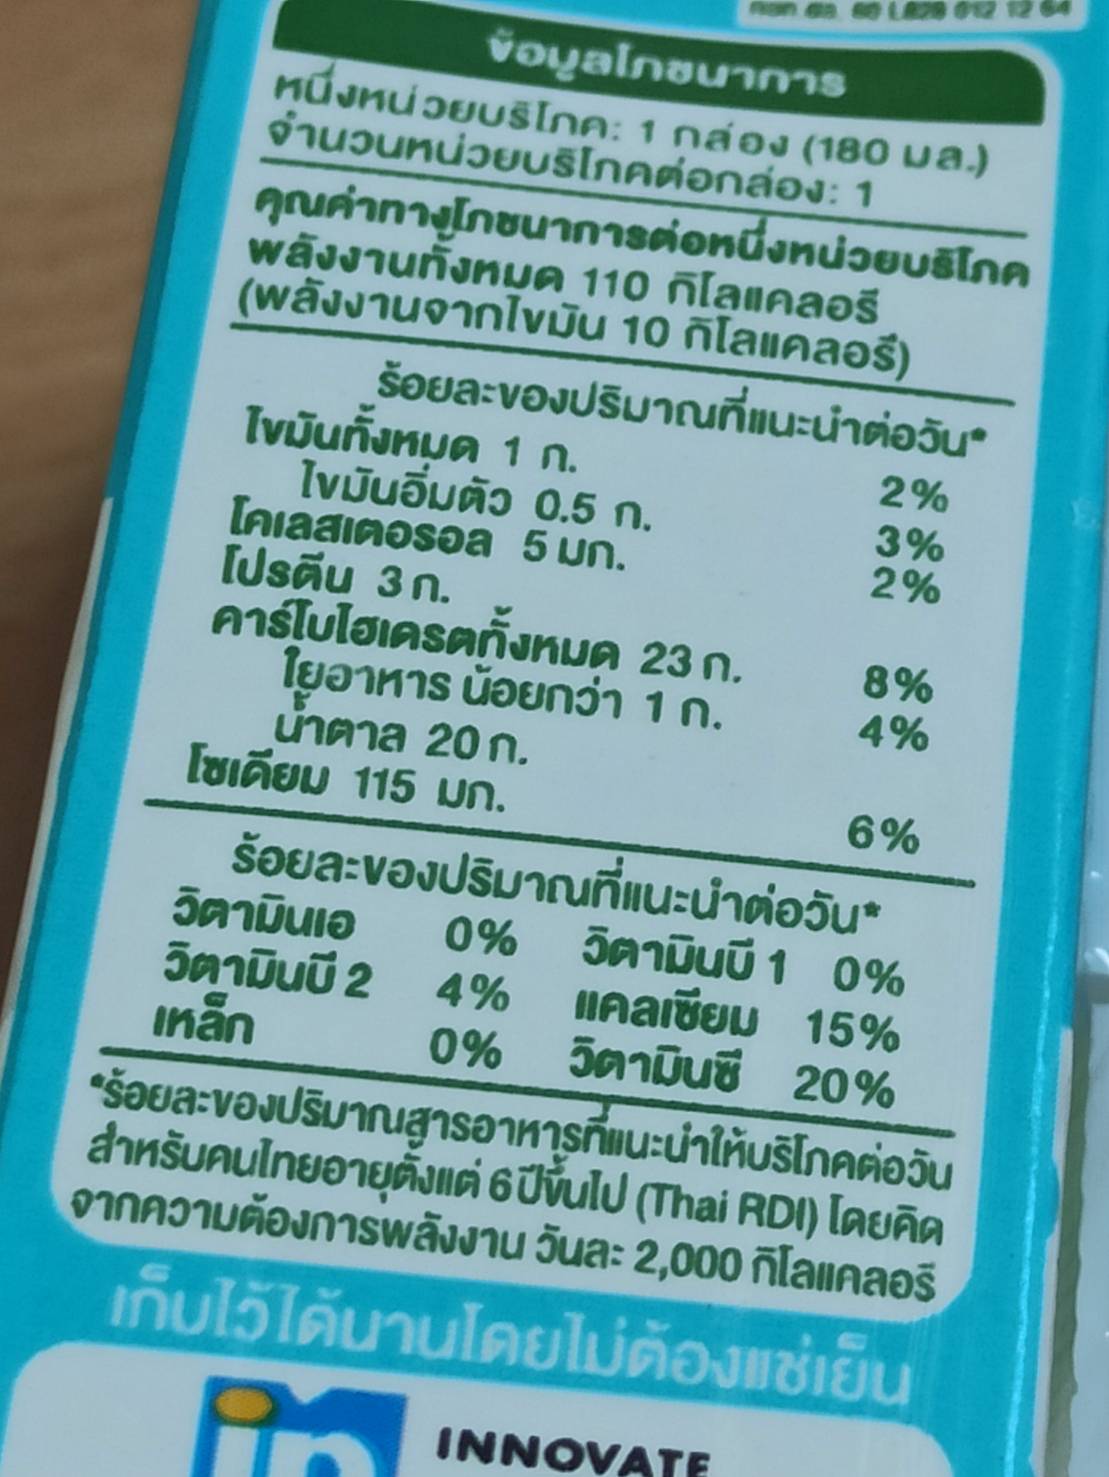 การพัฒนาแบบสอบถามเพื่อวัดความเข้าใจฉลากโภชนาการสำหรับเด็กไทยอายุ 10-18 ปี ทำได้อย่างไร?